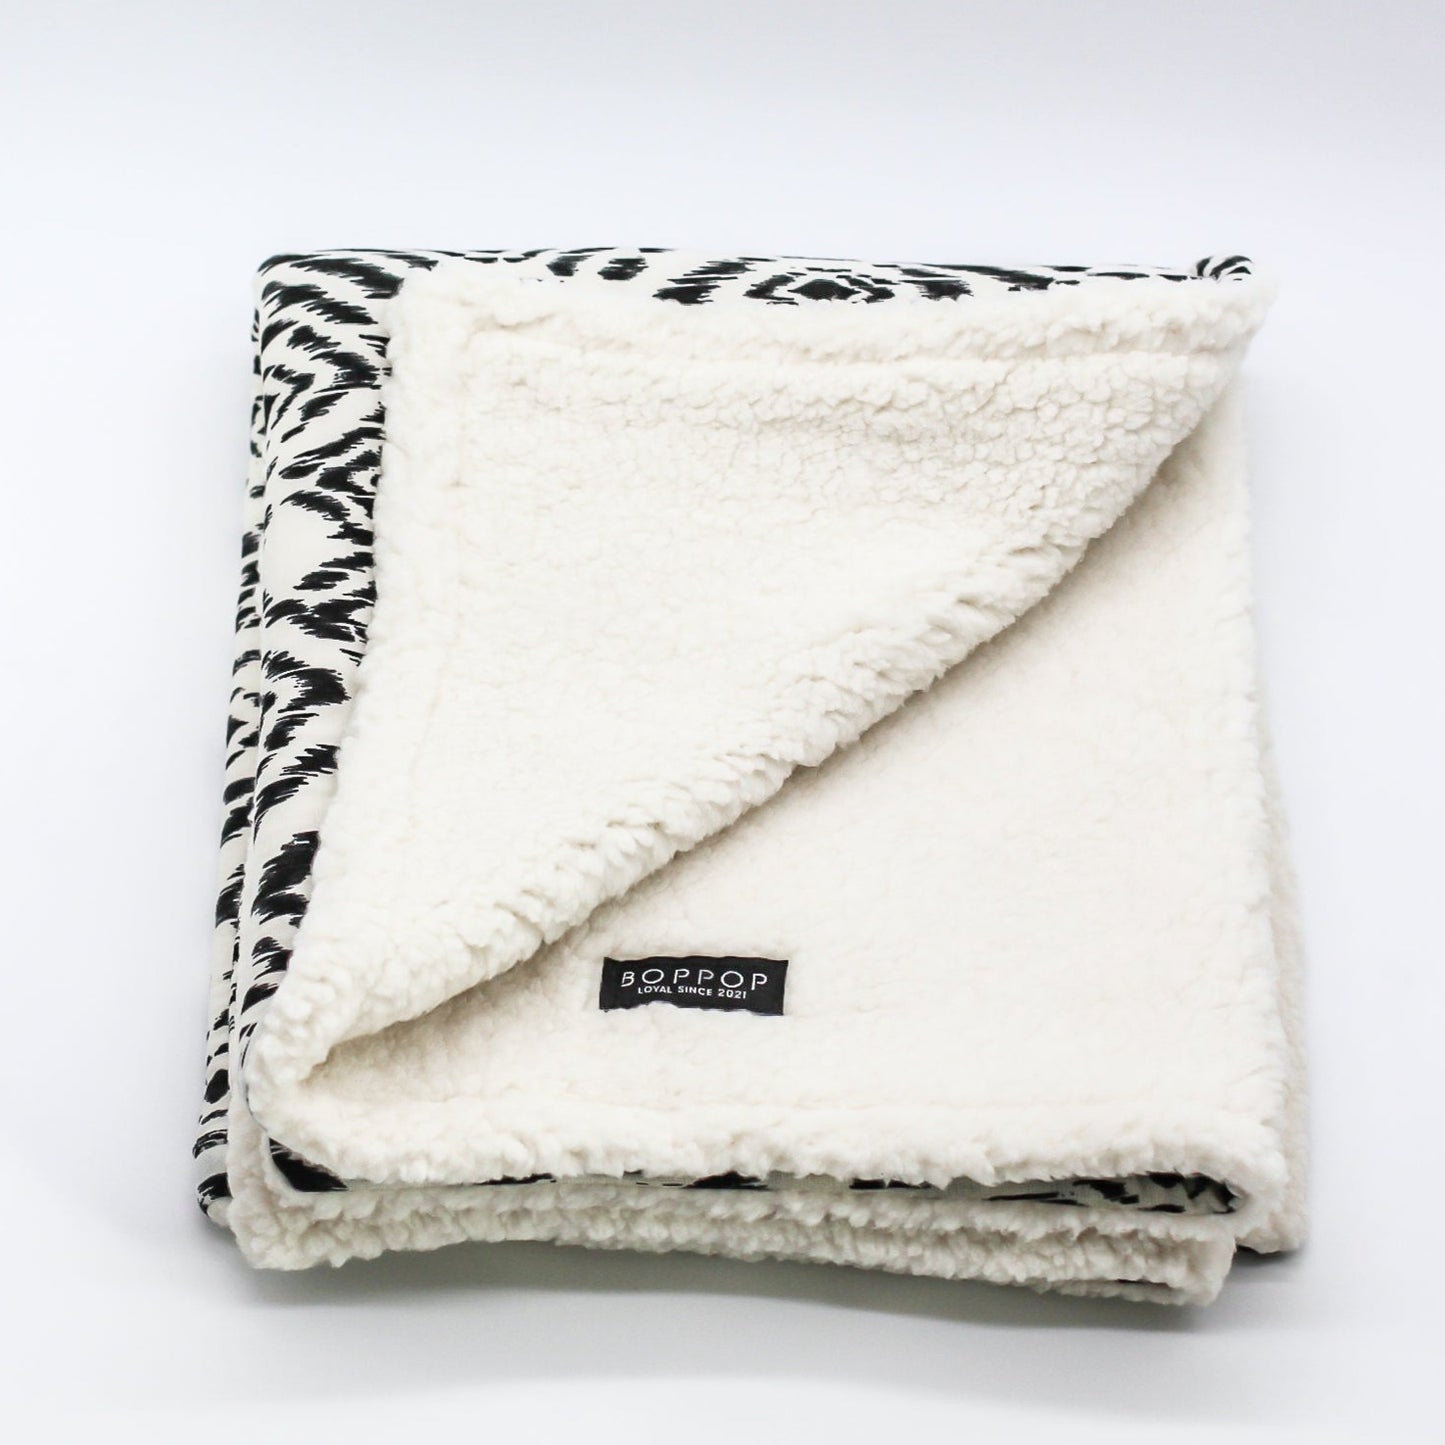 Sherpa iKat Pattern Boho Mini Pet Blanket Dogs Cats Black White